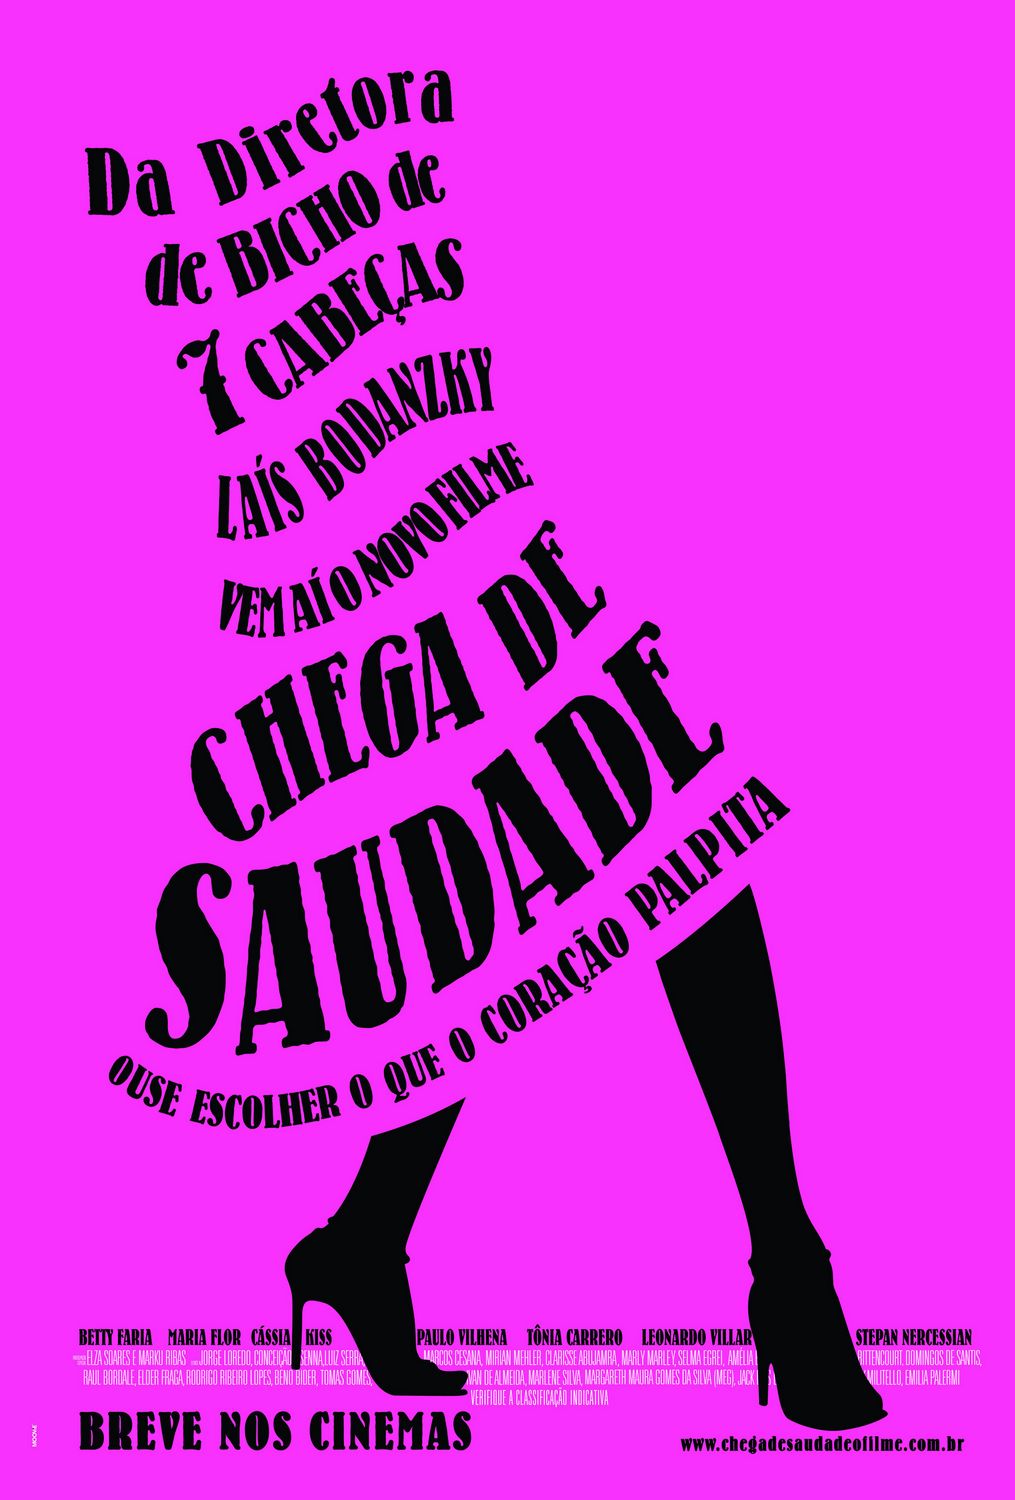 Extra Large Movie Poster Image for Chega de Saudade (#1 of 2)